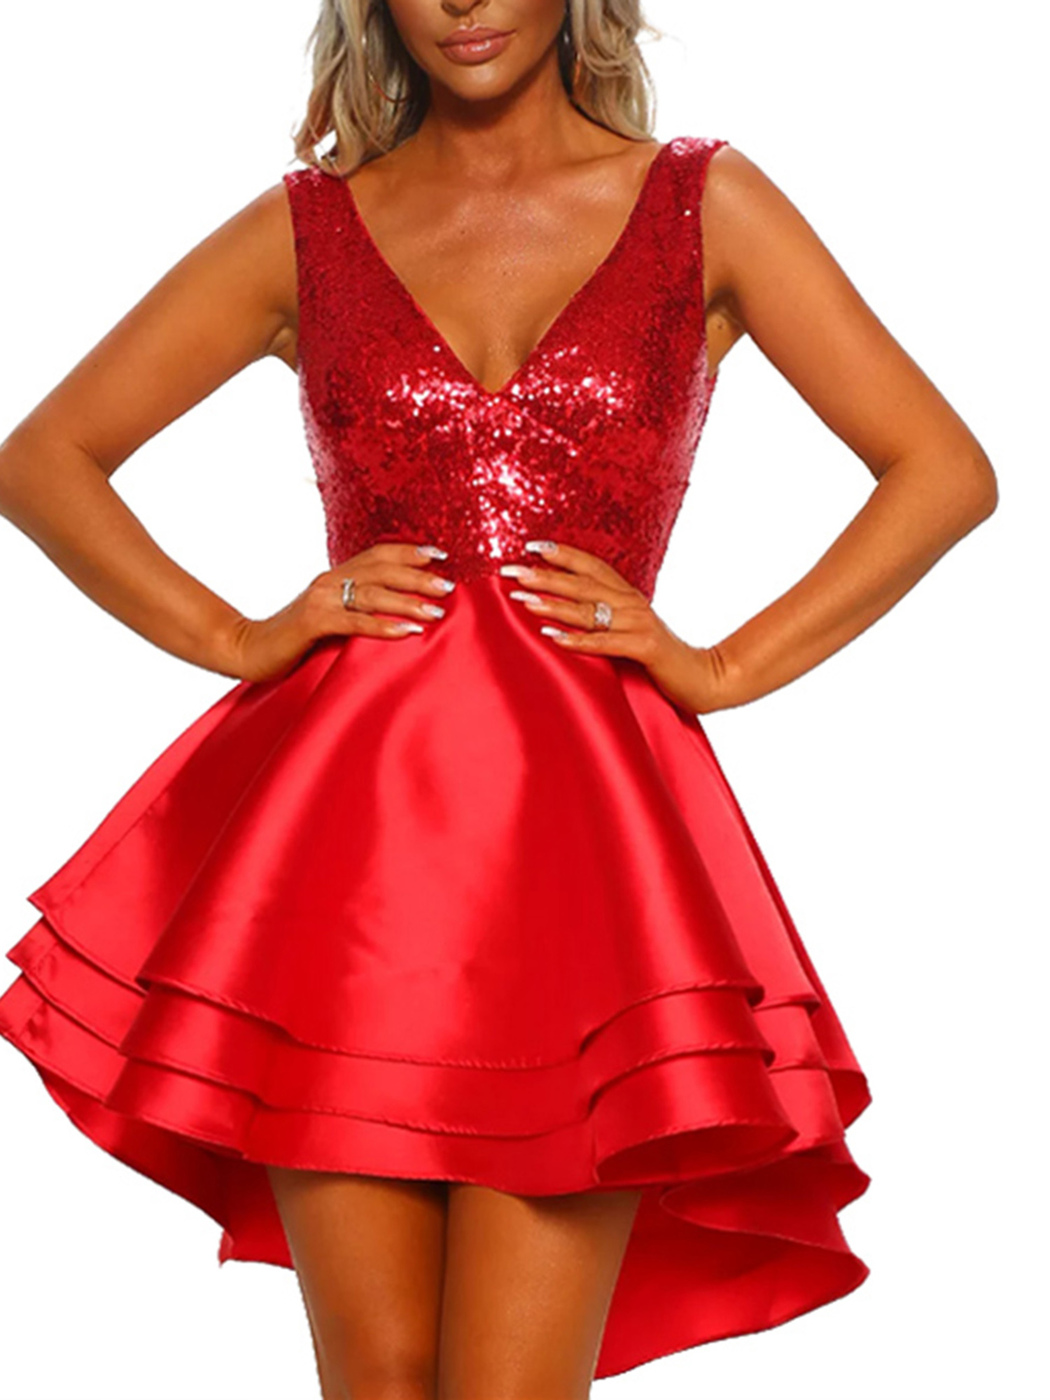 Картинки платьев короткие. Красное платье. Красивое красное платье. Красное коктейльное платье. Платье вечернее короткое.